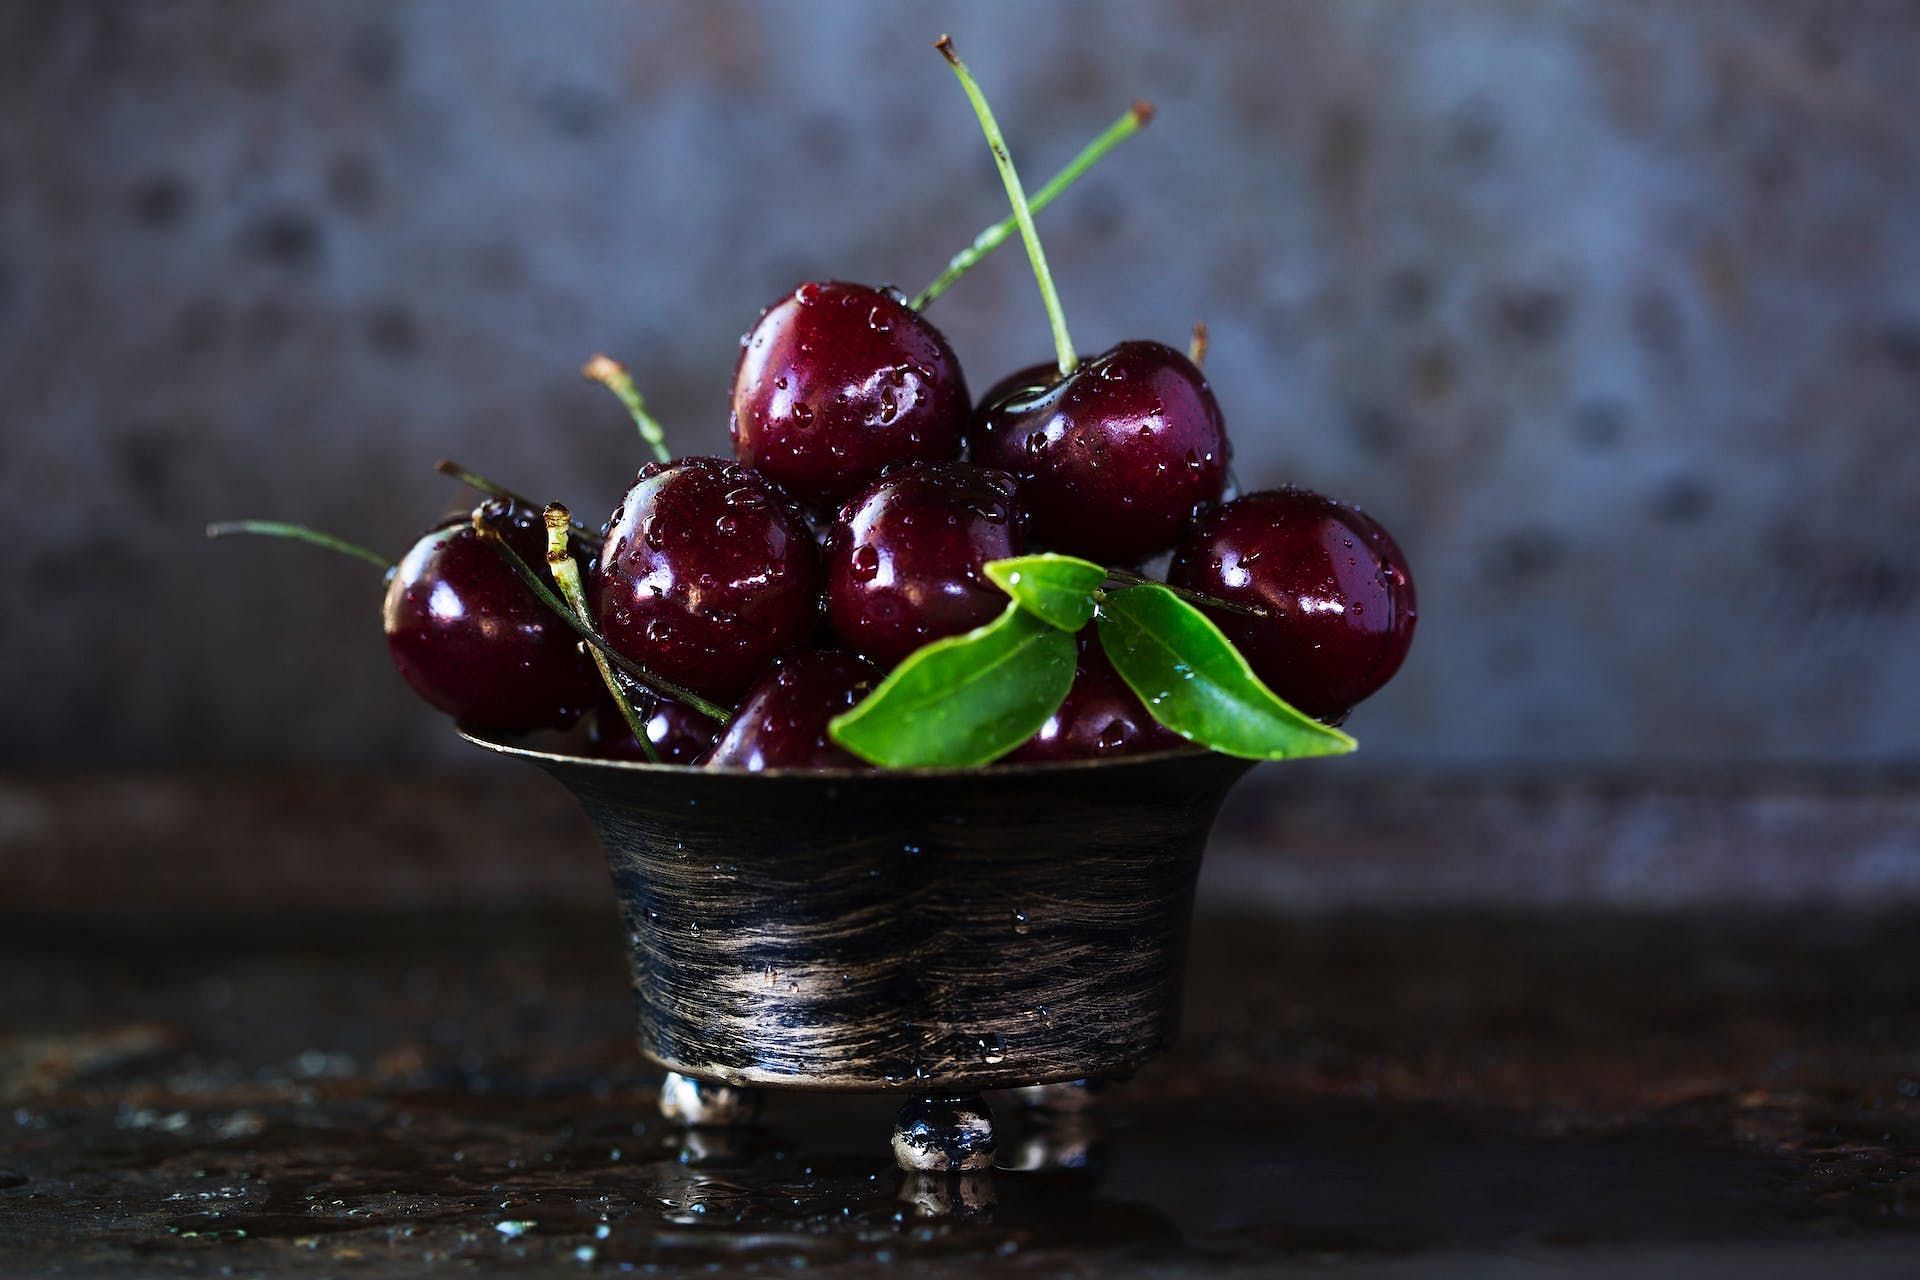 Cherries are rich in melatonin and Typtophan (Image via Pexels/Wendy van Zyl)